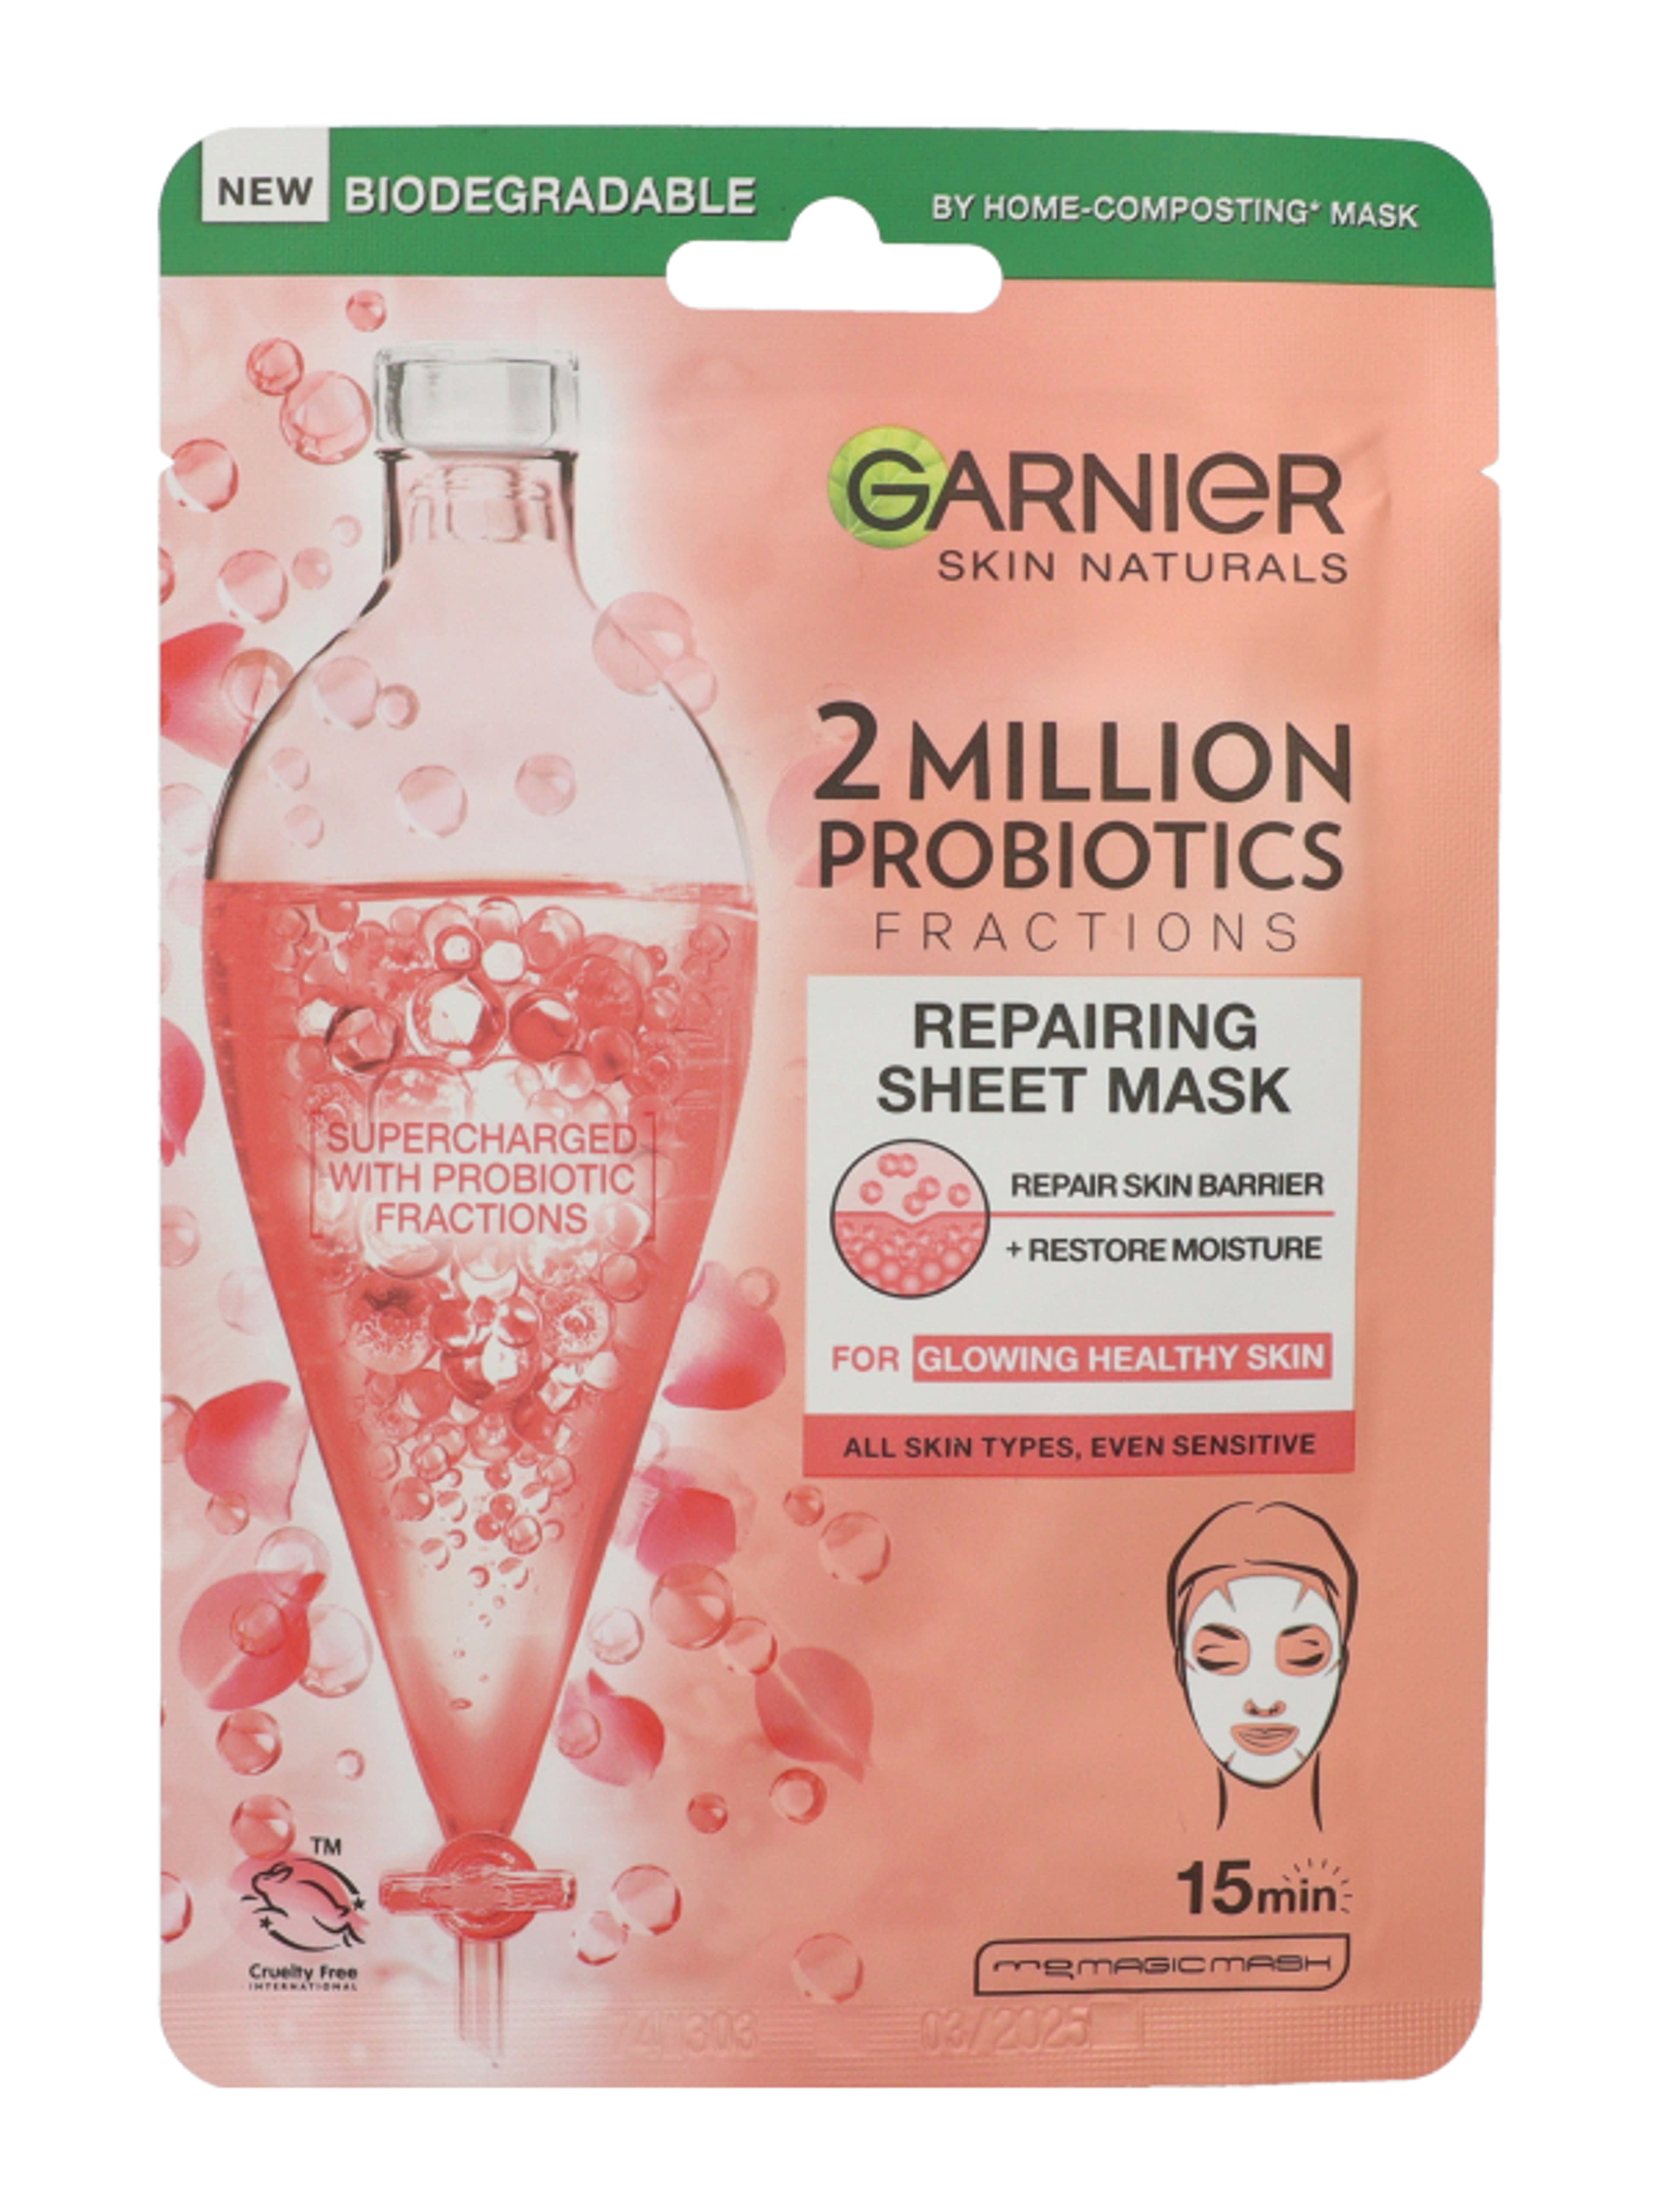 Garnier Skin Naturals texilmaszk probiotikummal  - 1 db-2